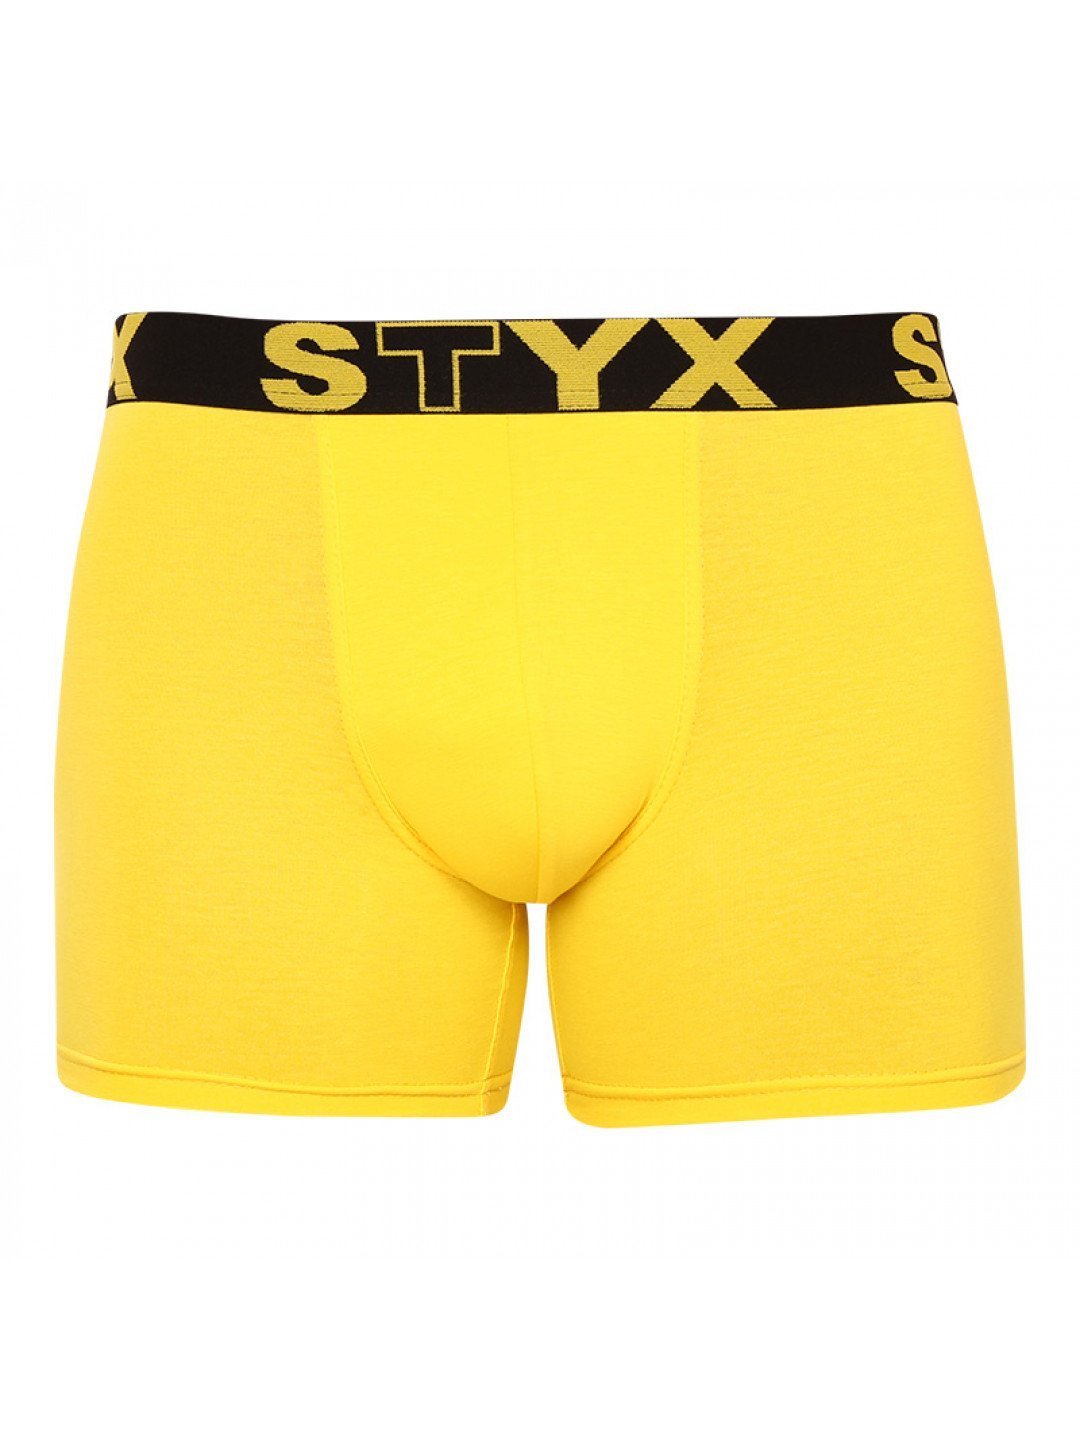 Pánské boxerky Styx long sportovní guma žluté U1068 S